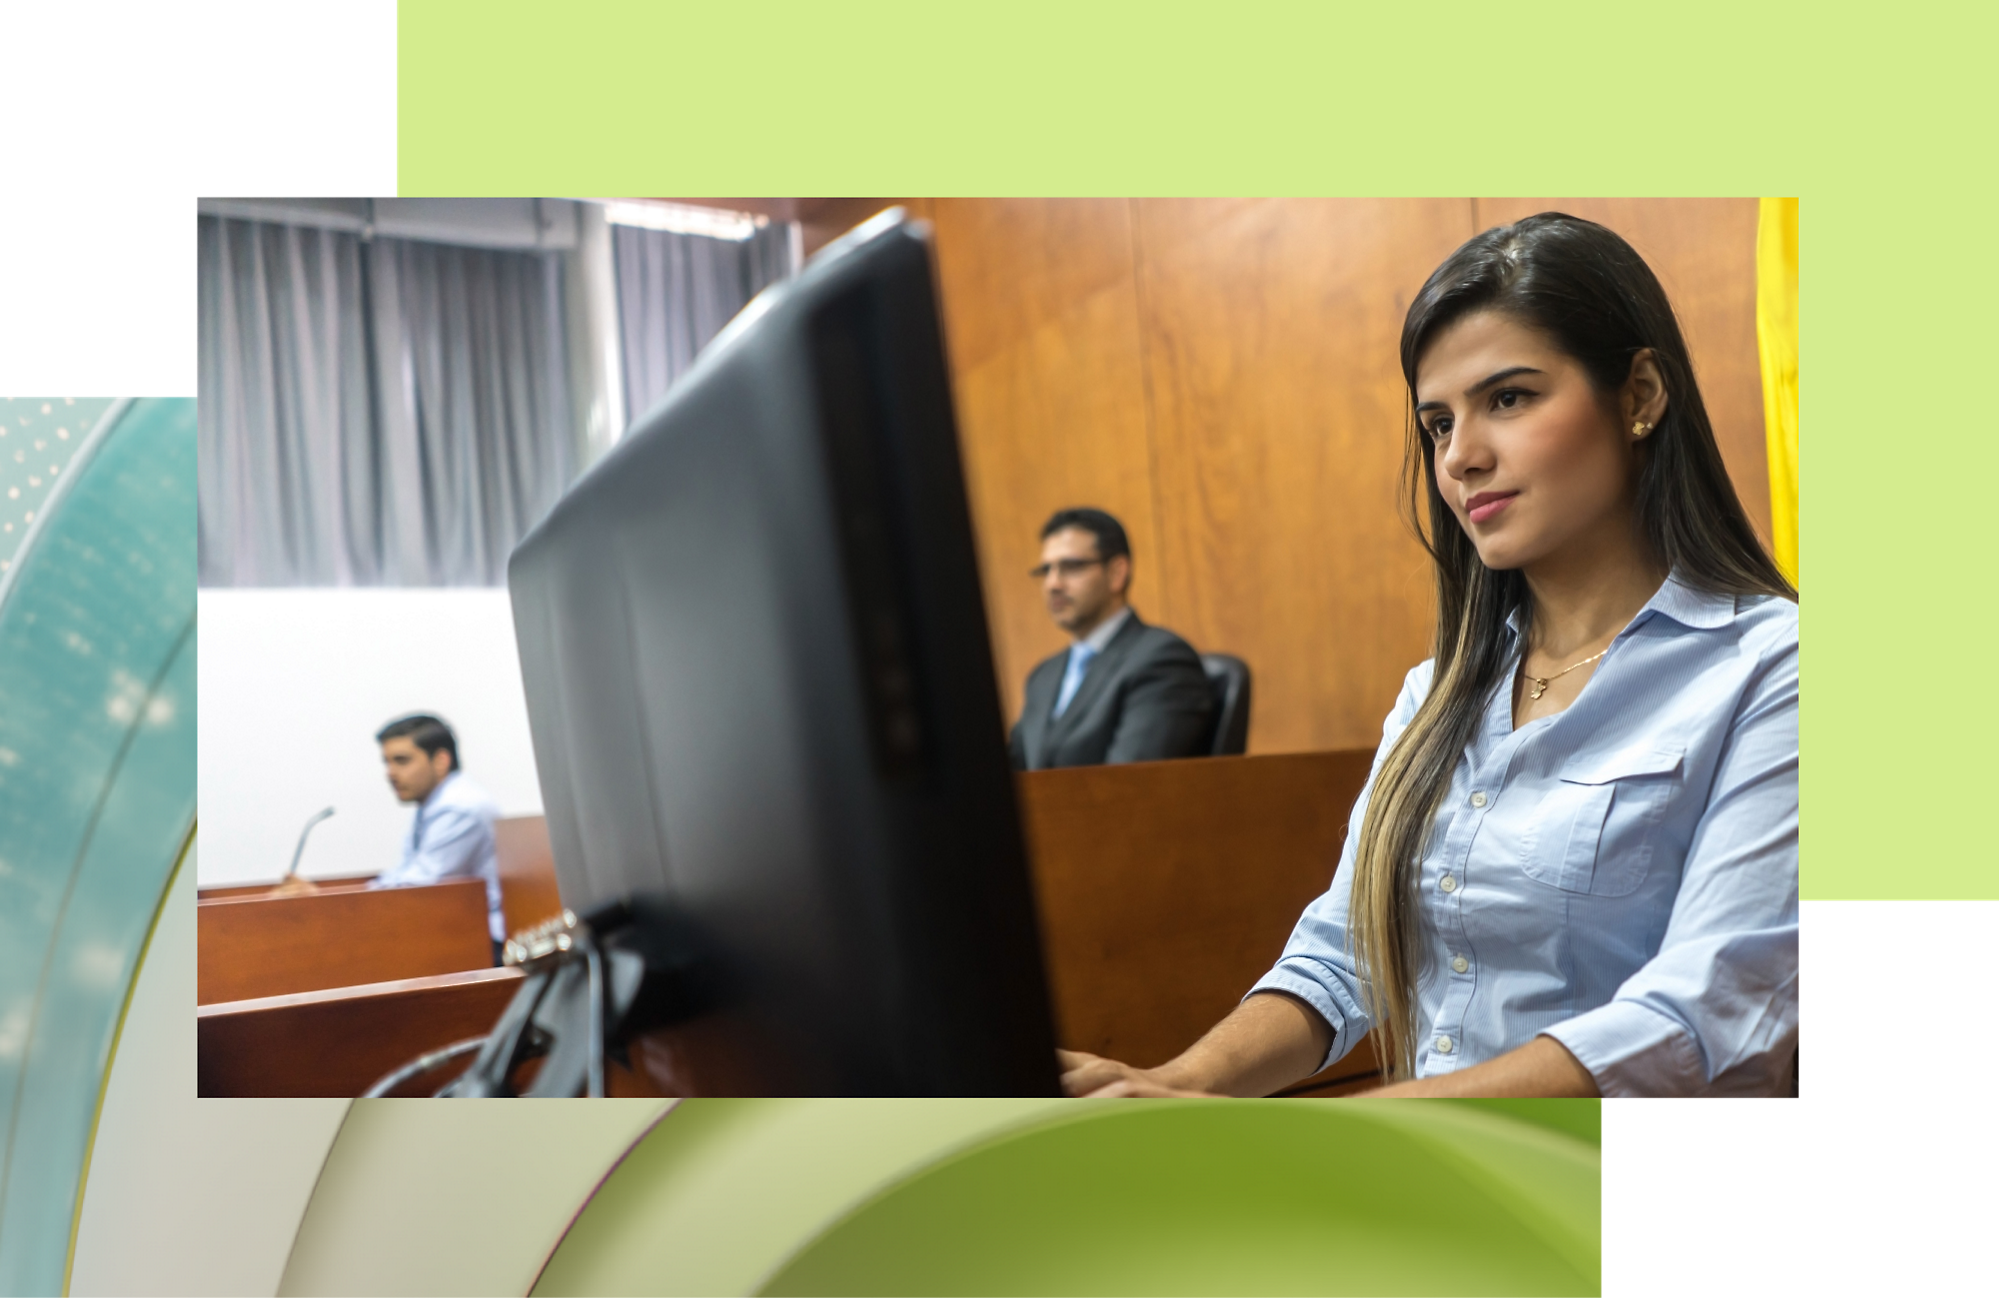 صورة لشابة ترتدي قميصاً أزرق تجلس على مكتب مع جهاز كمبيوتر في قاعة المحكمة؛ رجلان في الخلفية